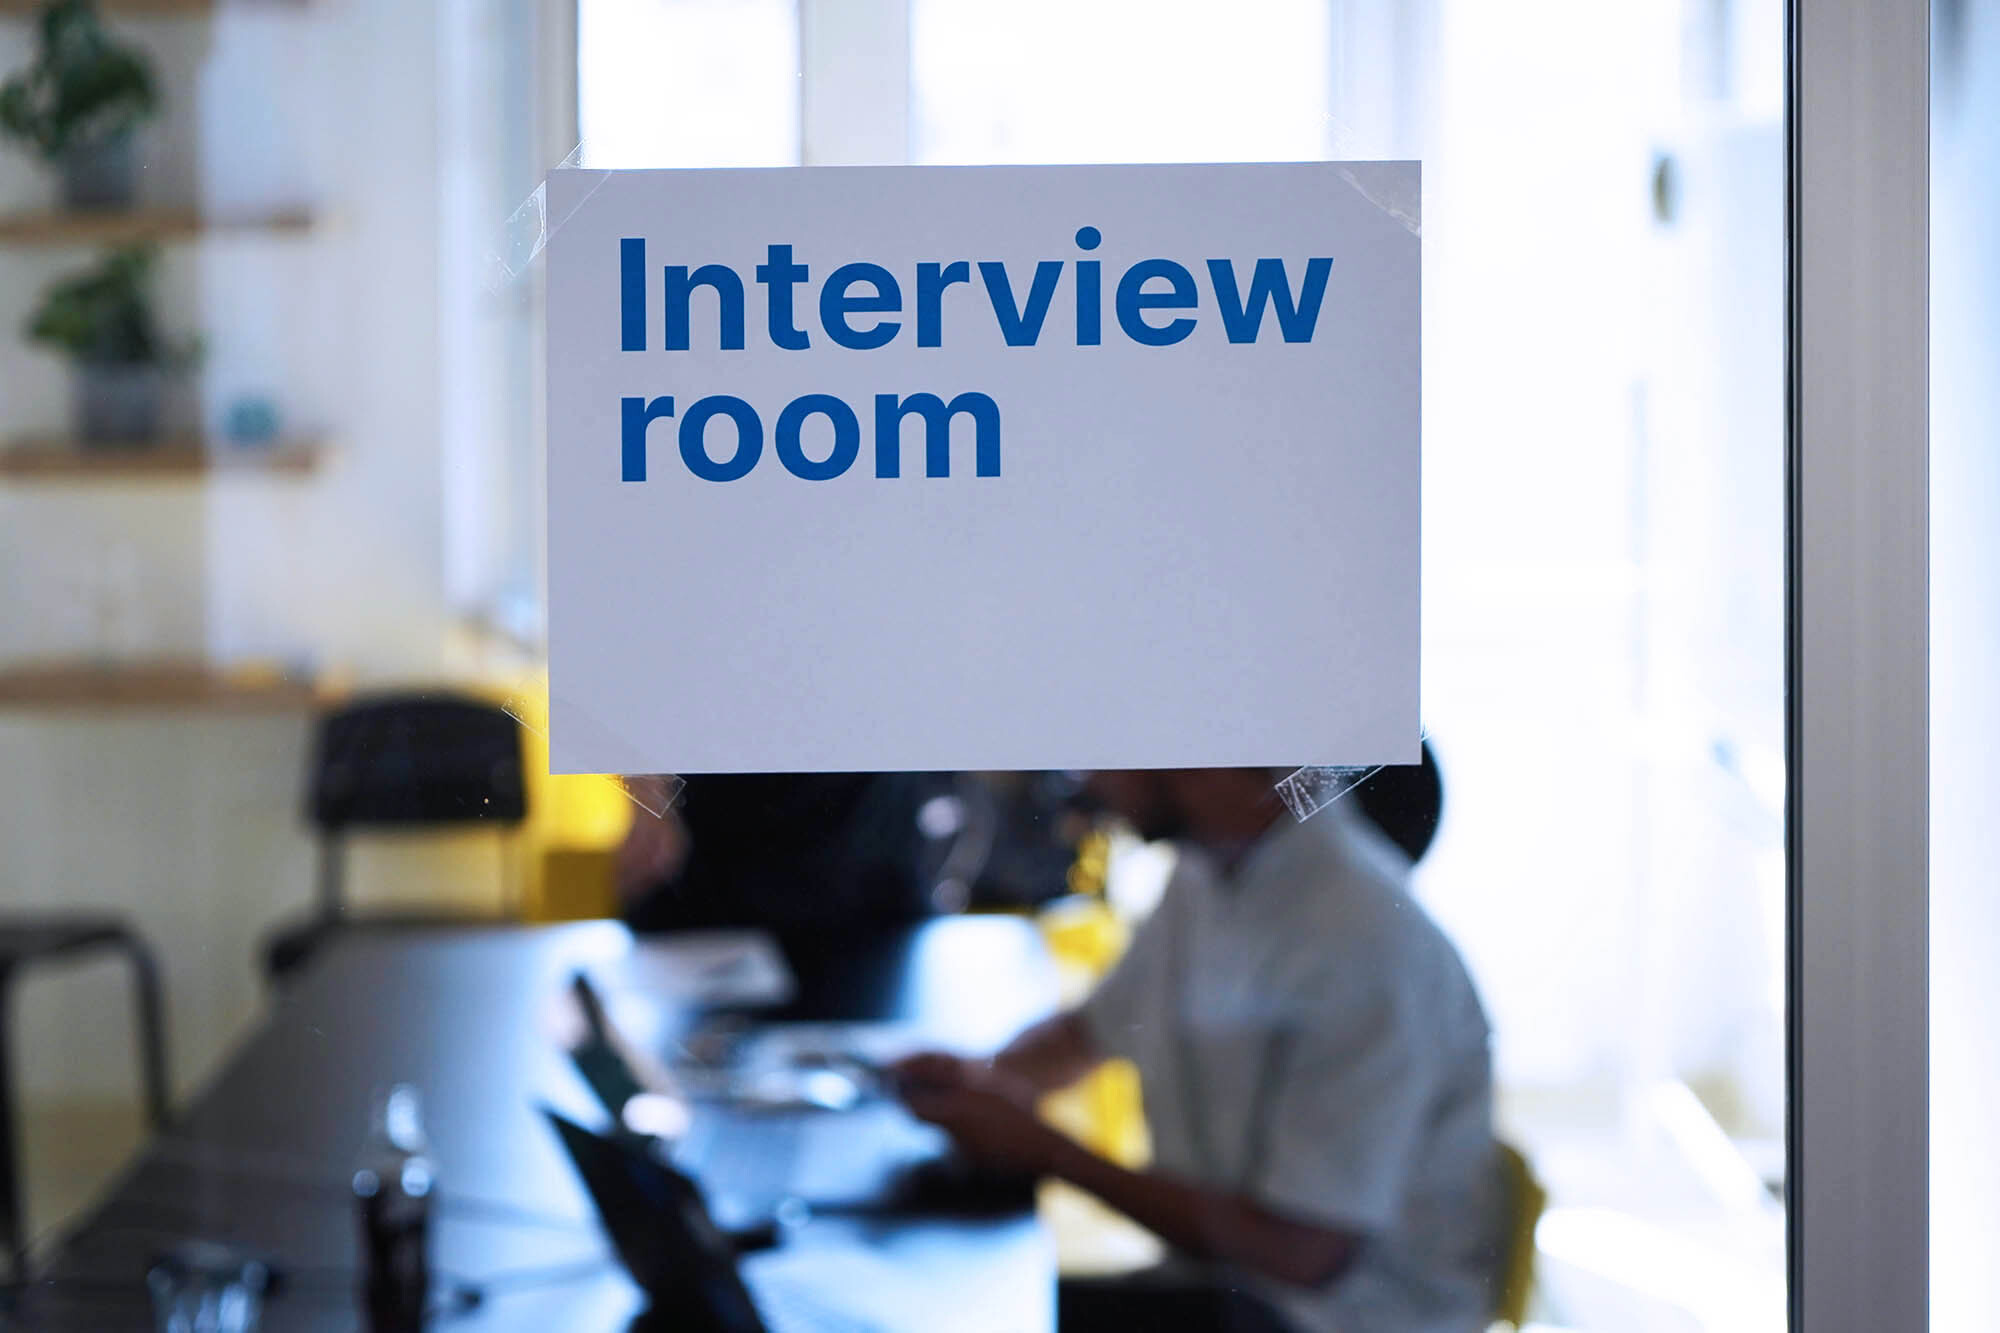 Ein Zettel an einer Glaswand, auf dem steht: “Interview room’. Dahinter sieht man unscharf 2 Menschen an einem Tisch sitzend.